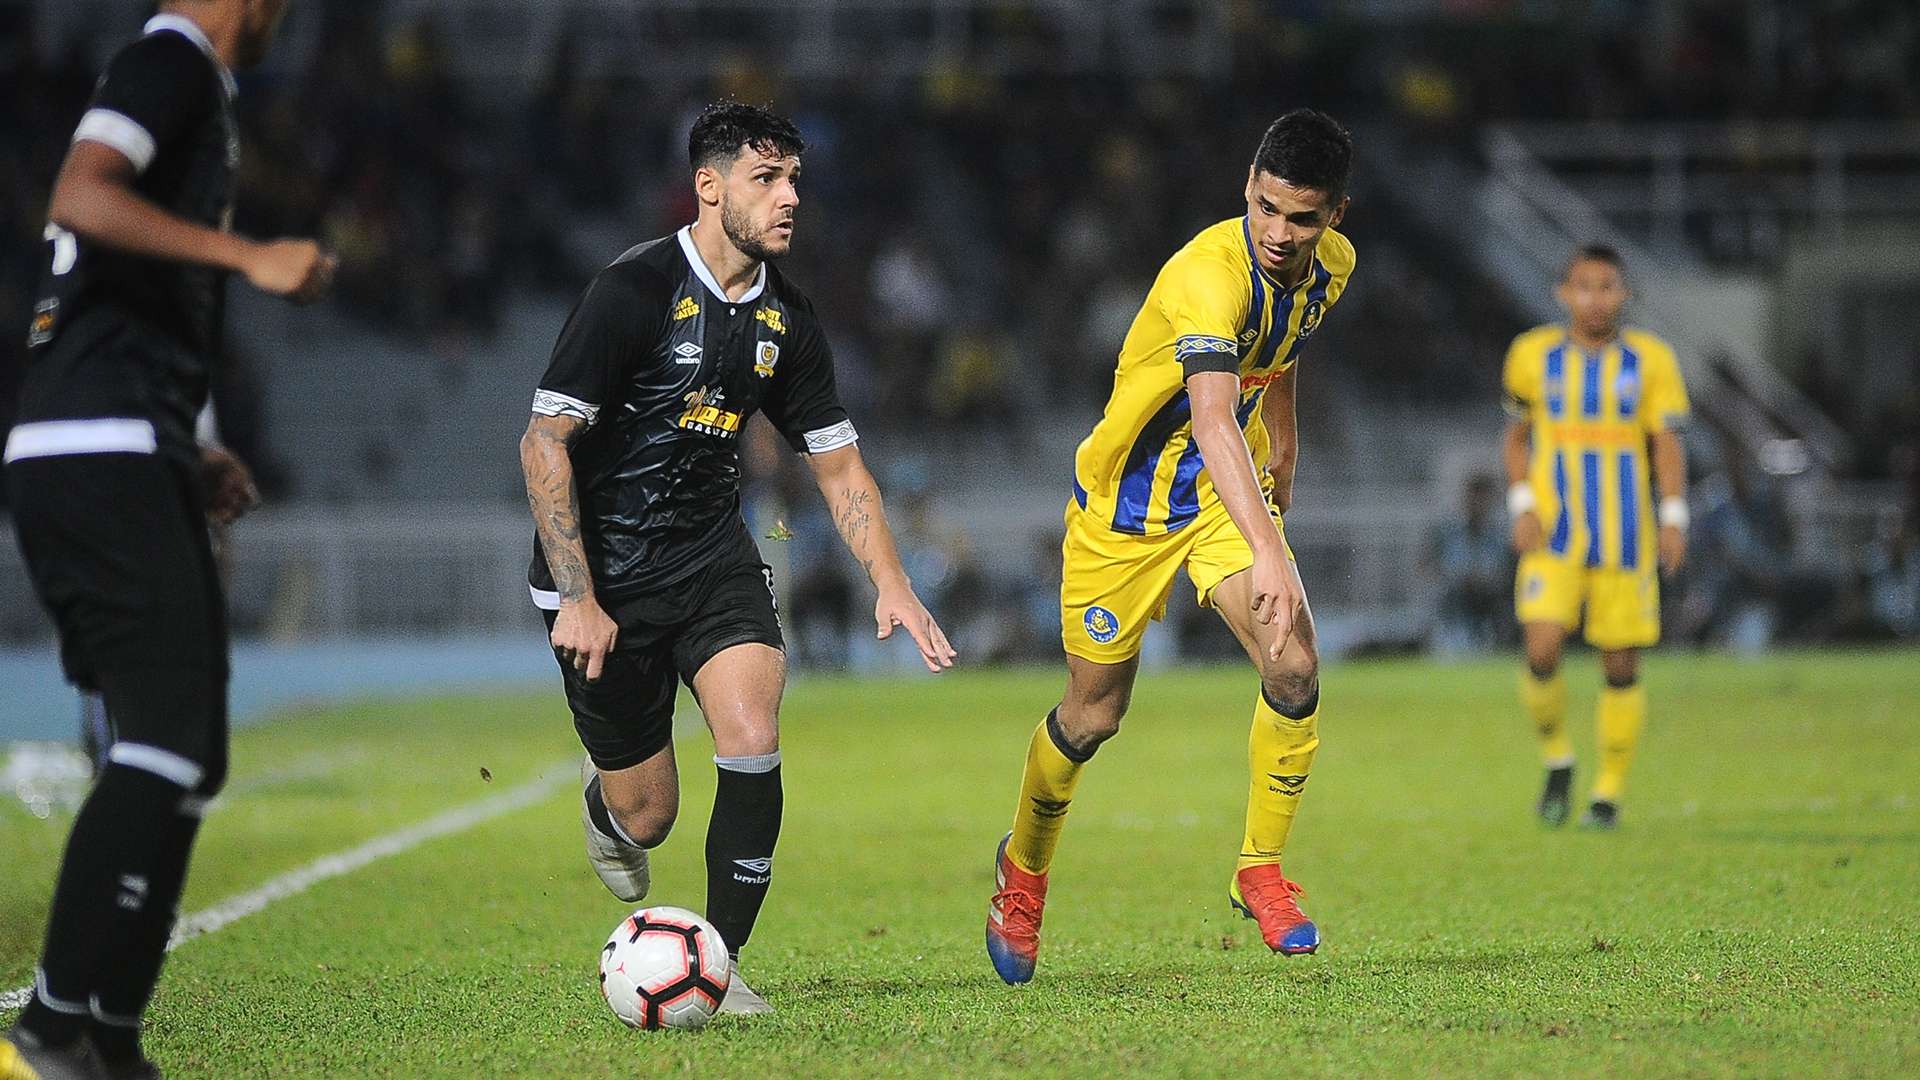 Safuwan Baharudin, Pahang v Perak, Malaysia FA Cup, 21 Jun 2019